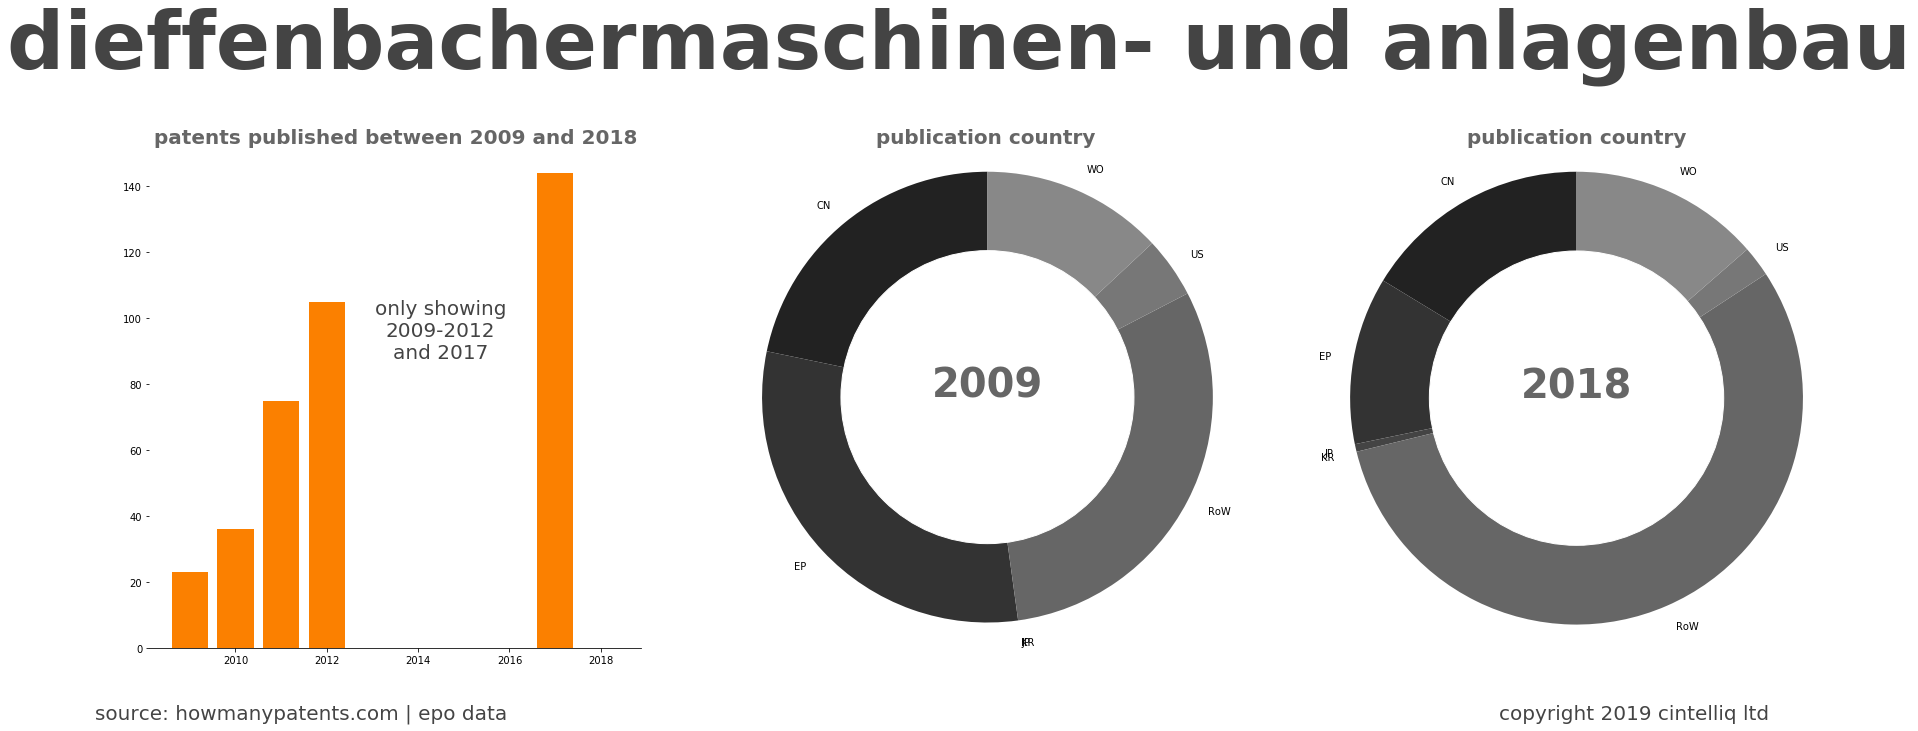 summary of patents for Dieffenbachermaschinen- Und Anlagenbau